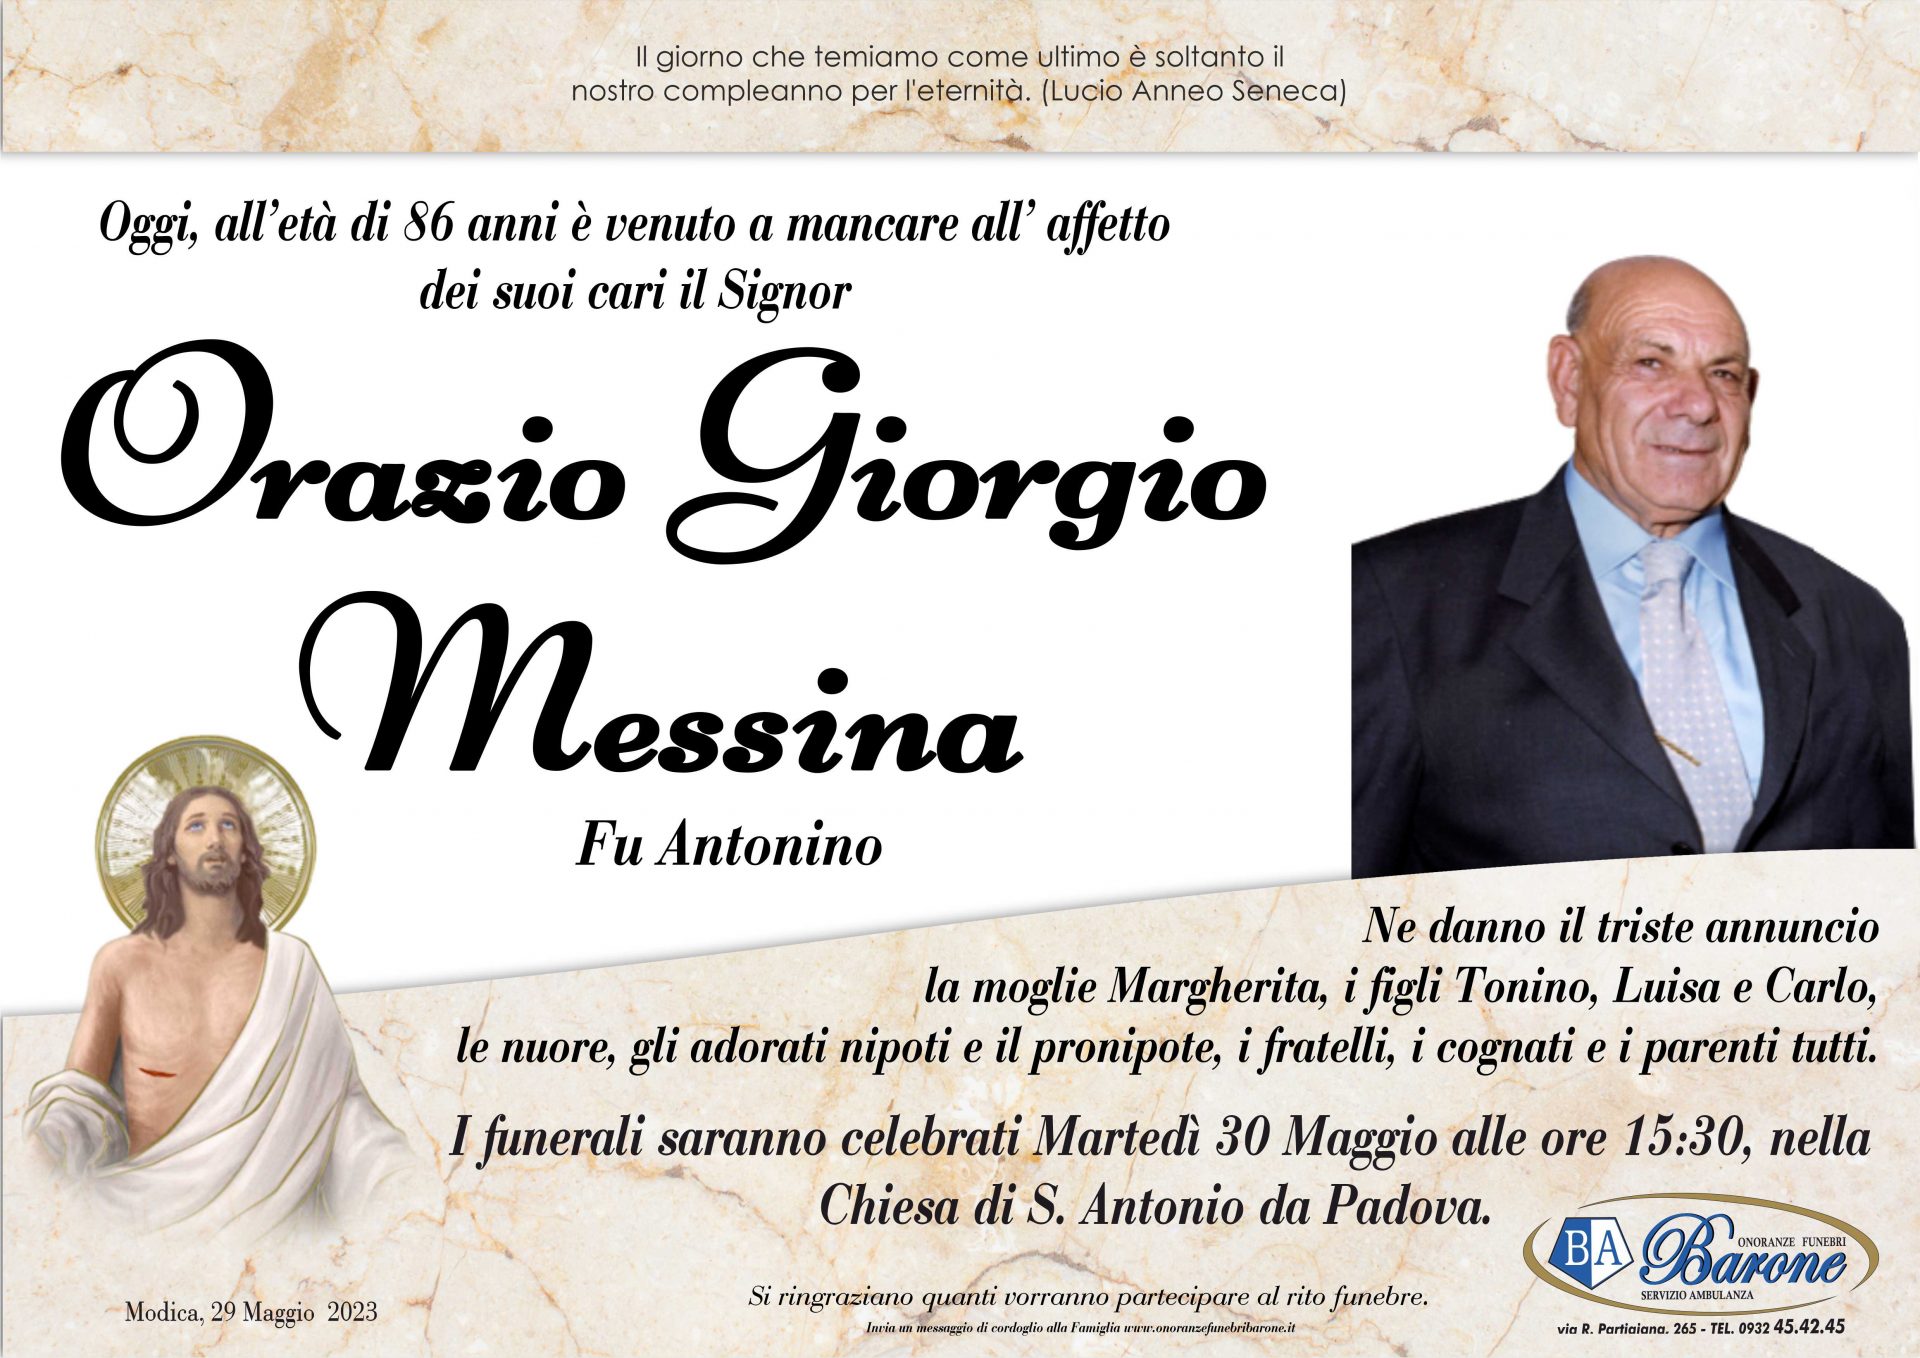 Orazio Giorgio Messina